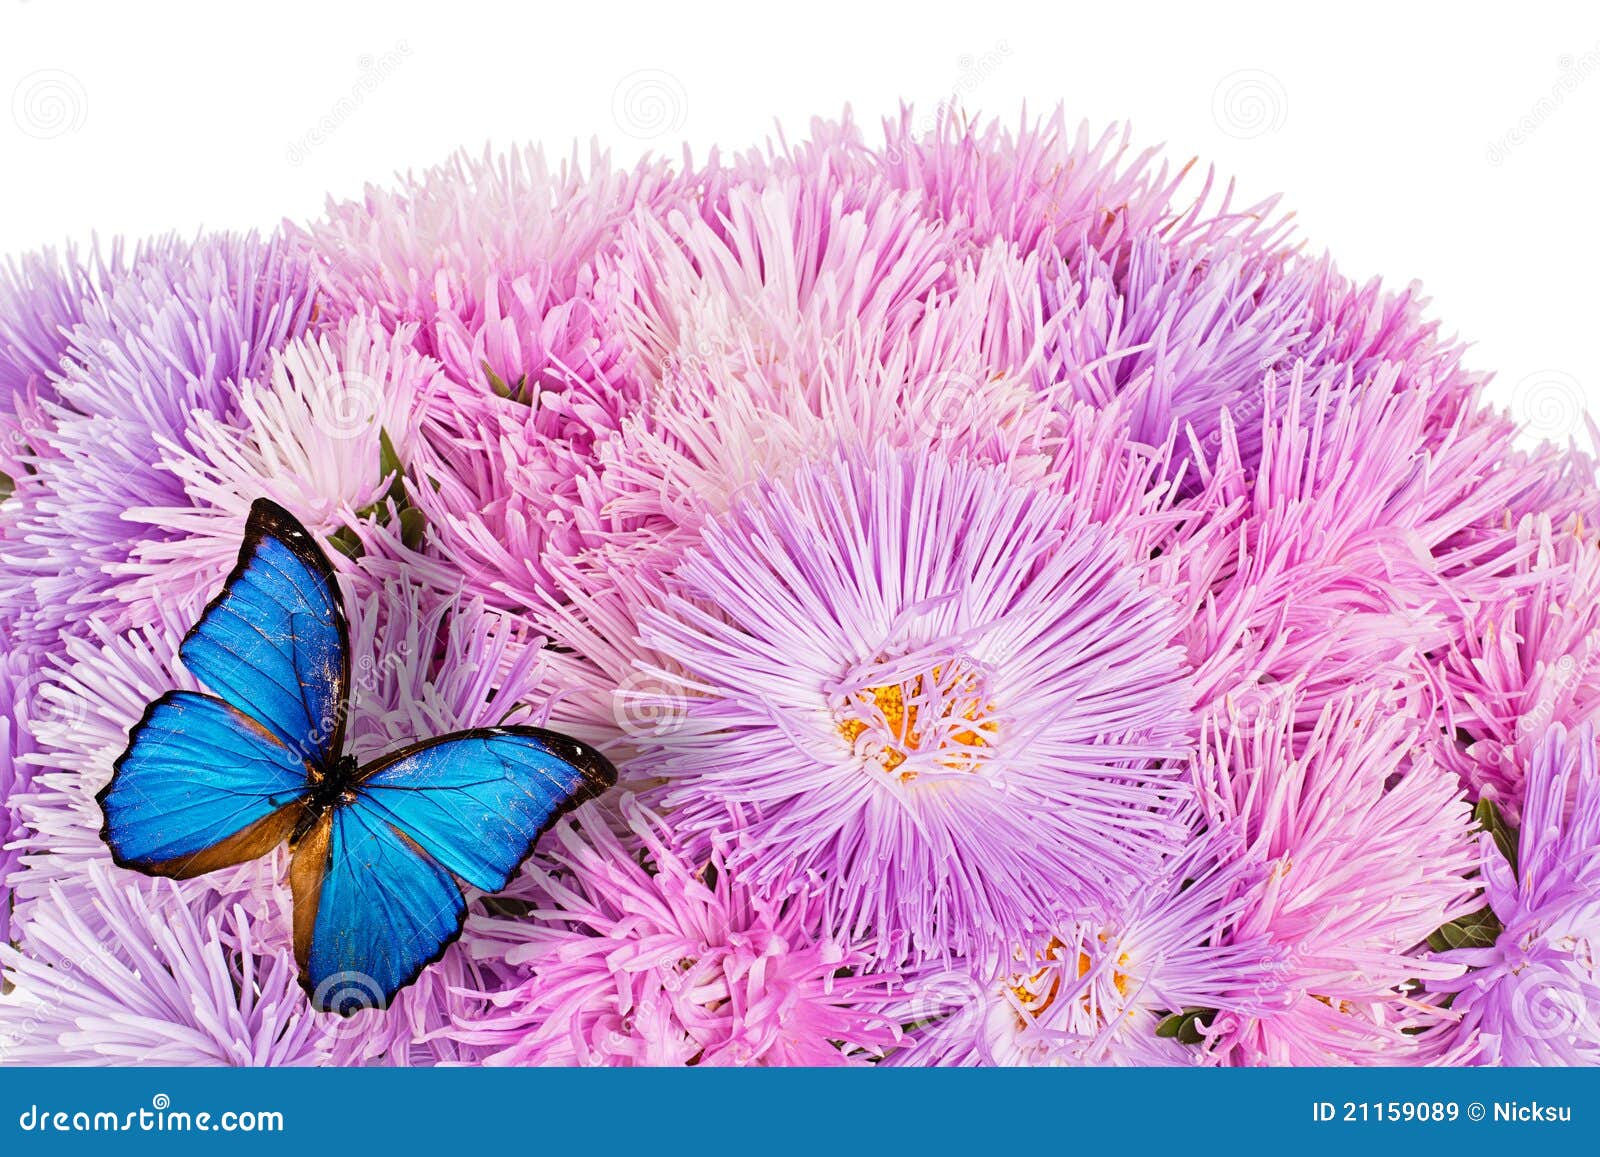 butterfly on purple aster flowers